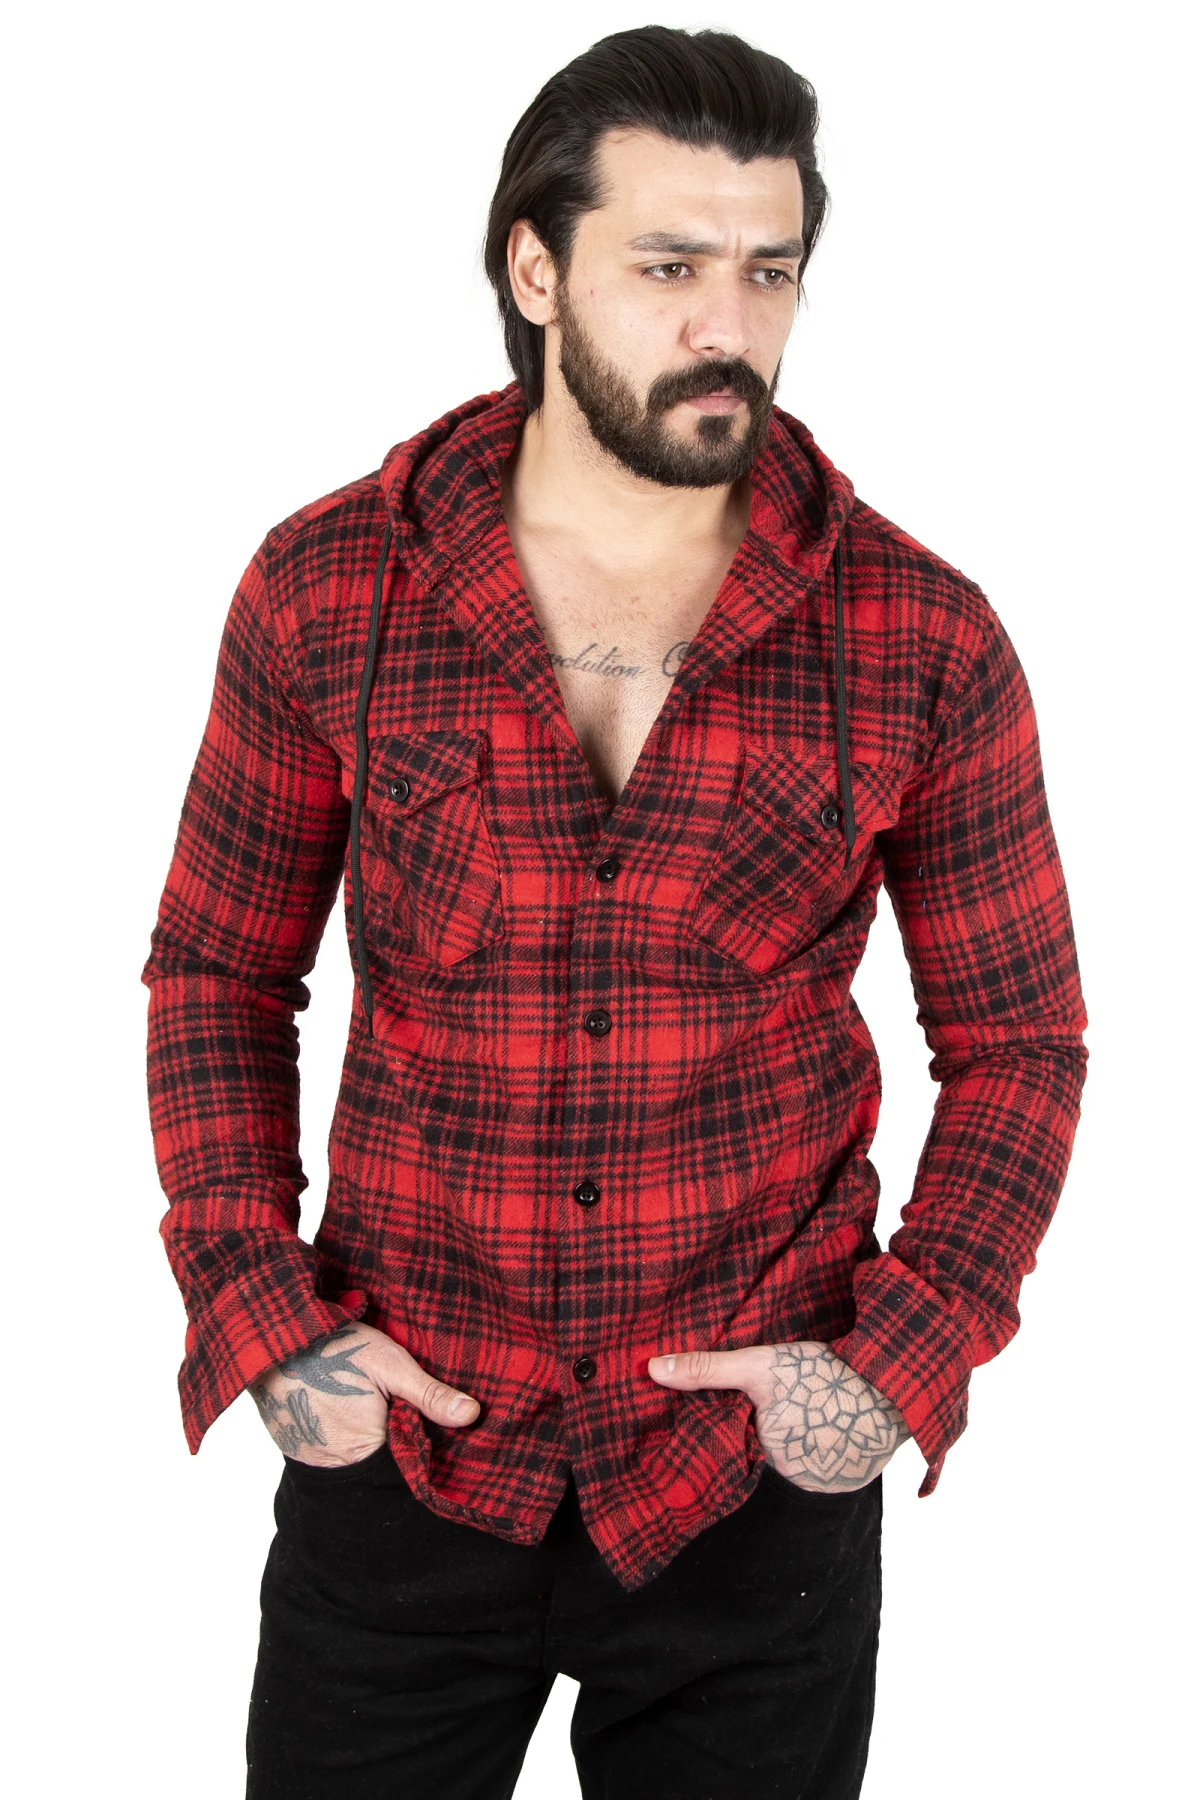 DeepSEA Plaid Pattern Hooded Double Pockets Lumberjack Men Shirt 2201873